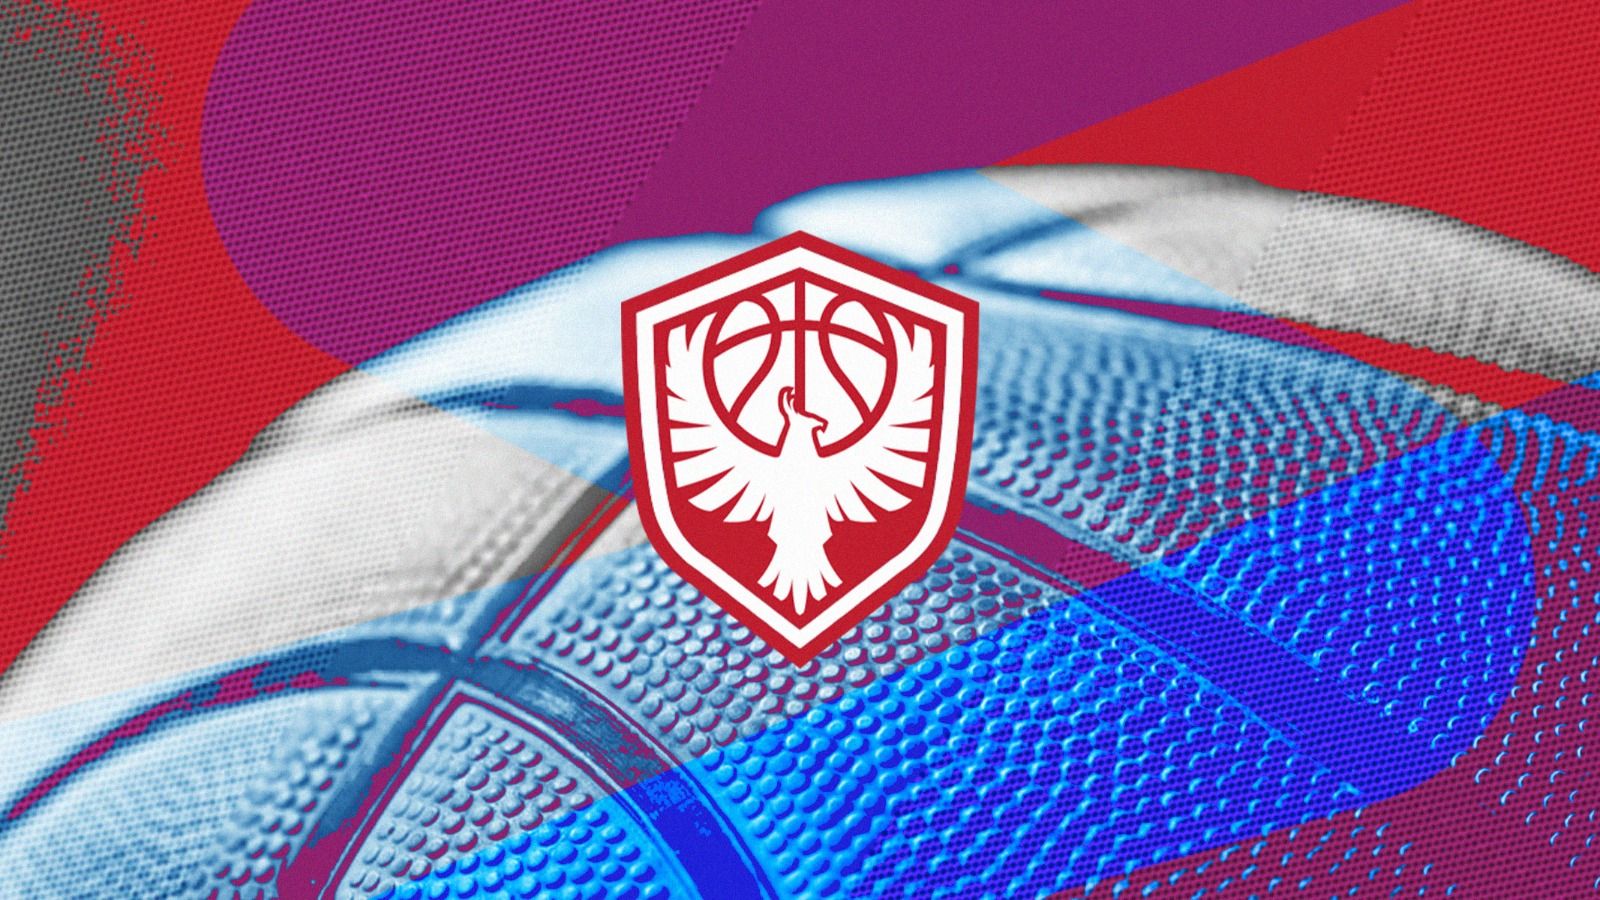 Kembangkan Potensi Pemain Muda, Perbasi Jalin Kerja Sama dengan Federasi Bola Basket Lithuania